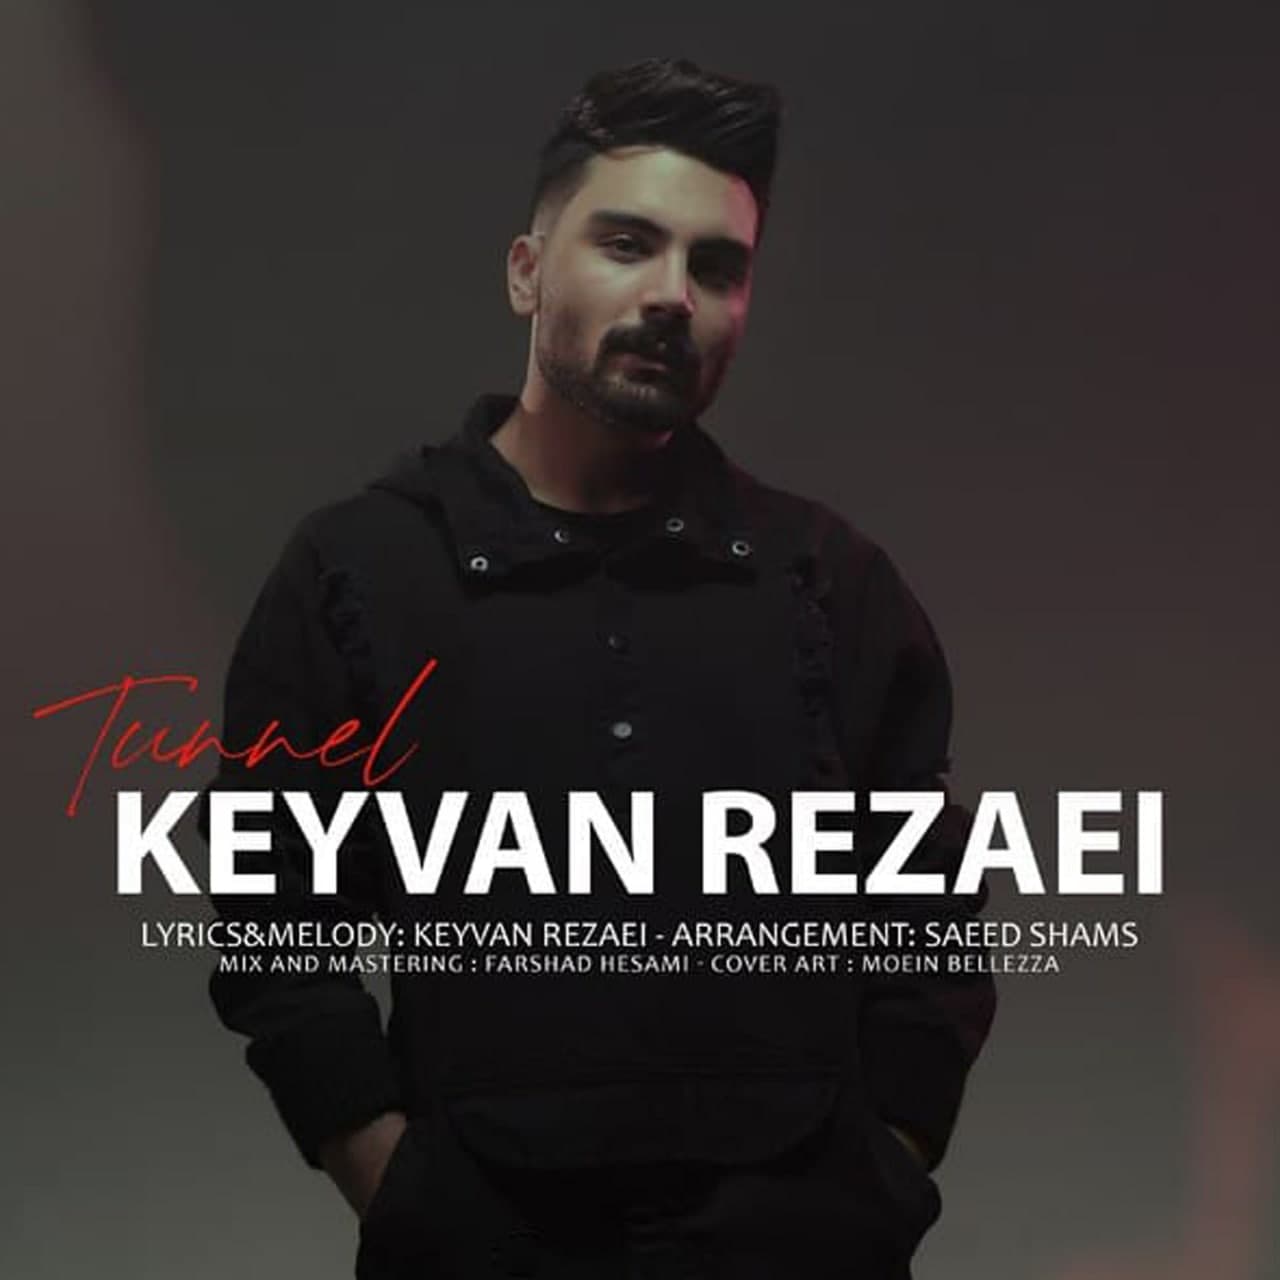  دانلود آهنگ جدید کیوان رضایی - تونل | Download New Music By Keyvan Rezaei - Tunnel